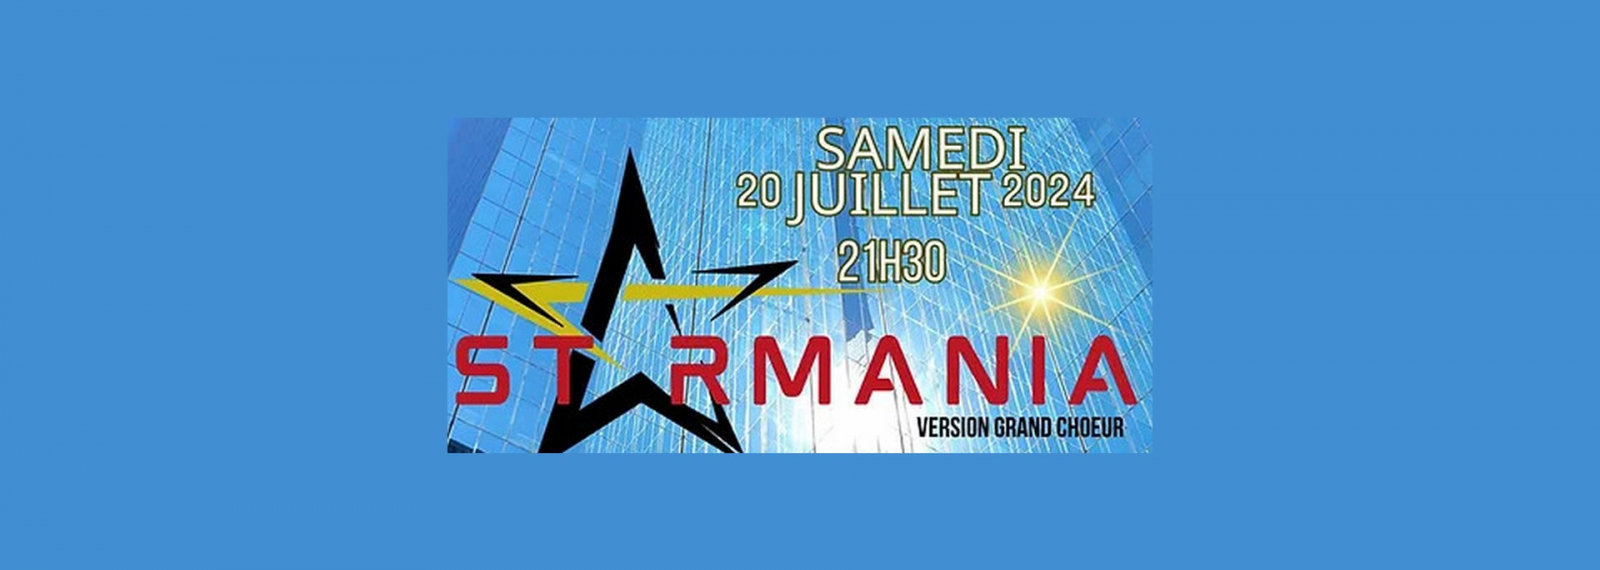 Concert Starmania à Saint-Rémy-de-Provence